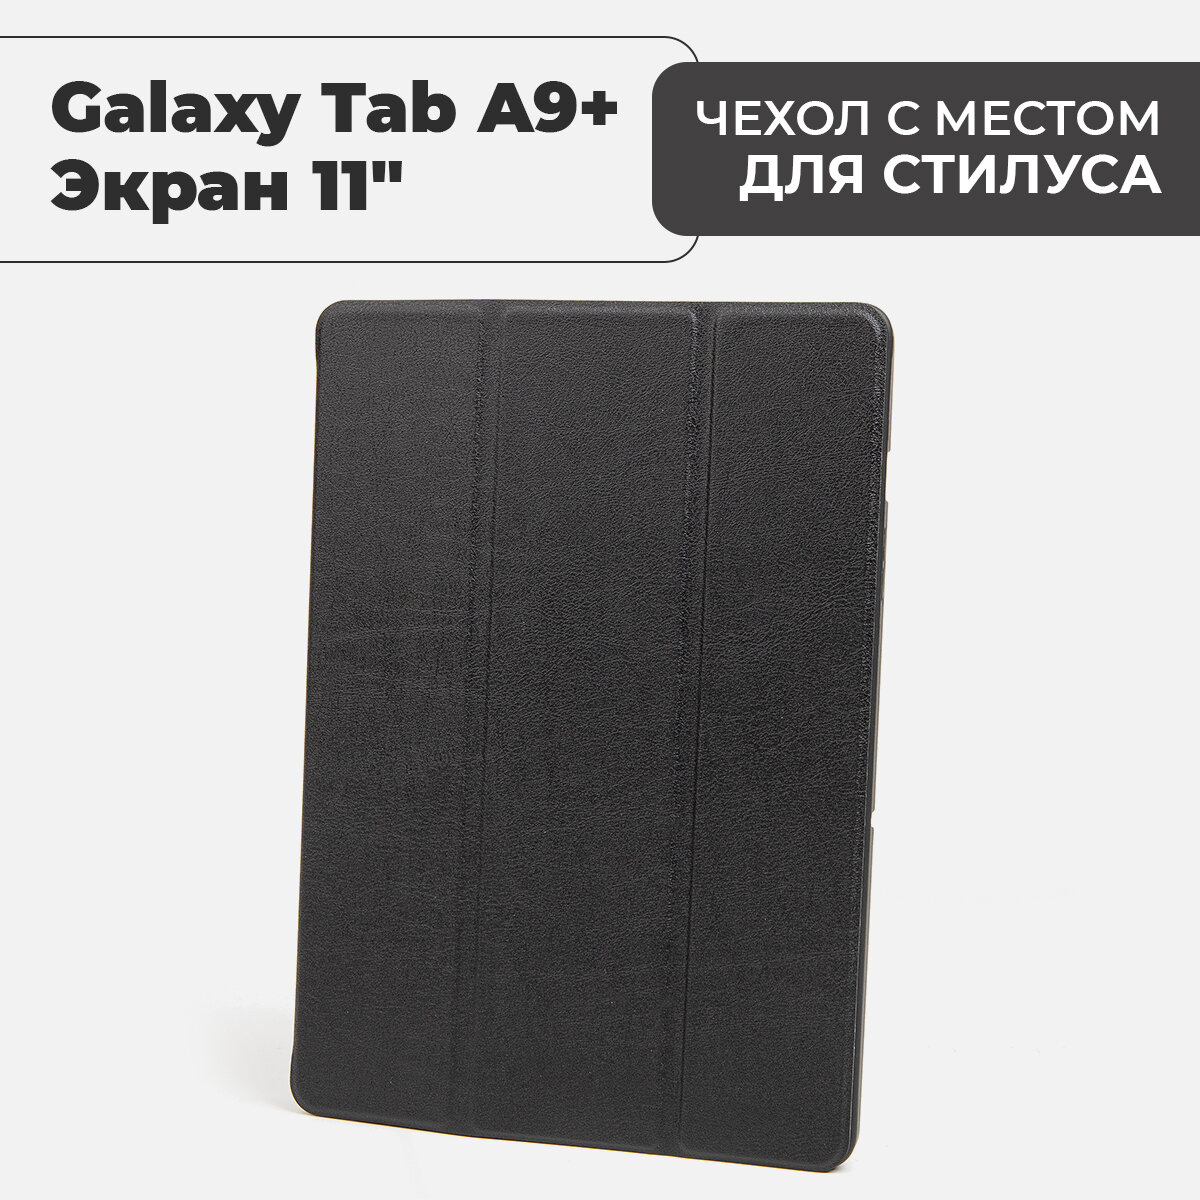 Чехол для планшета Samsung Galaxy Tab A9+ (экран 11") с местом для стилуса, черный